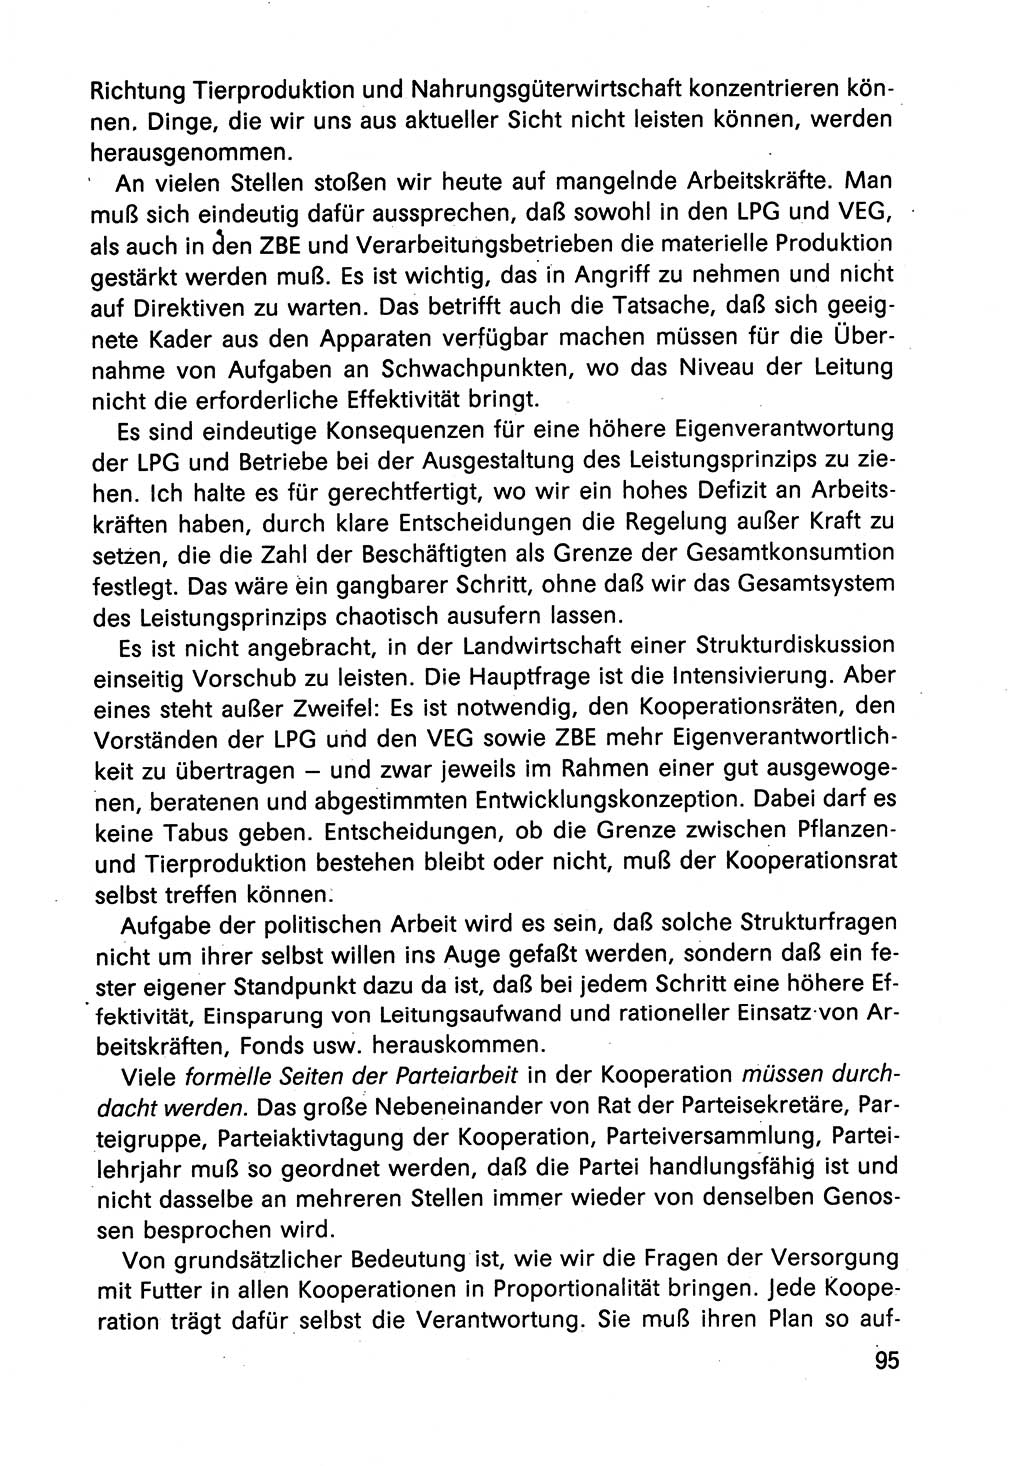 Diskussionsbeiträge, 10. Tagung des ZK (Zentralkomitee) der SED (Sozialistische Einheitspartei Deutschlands) [Deutsche Demokratische Republik (DDR)] 1989, Seite 95 (Disk.-Beitr. 10. Tg. ZK SED DDR 1989, S. 95)